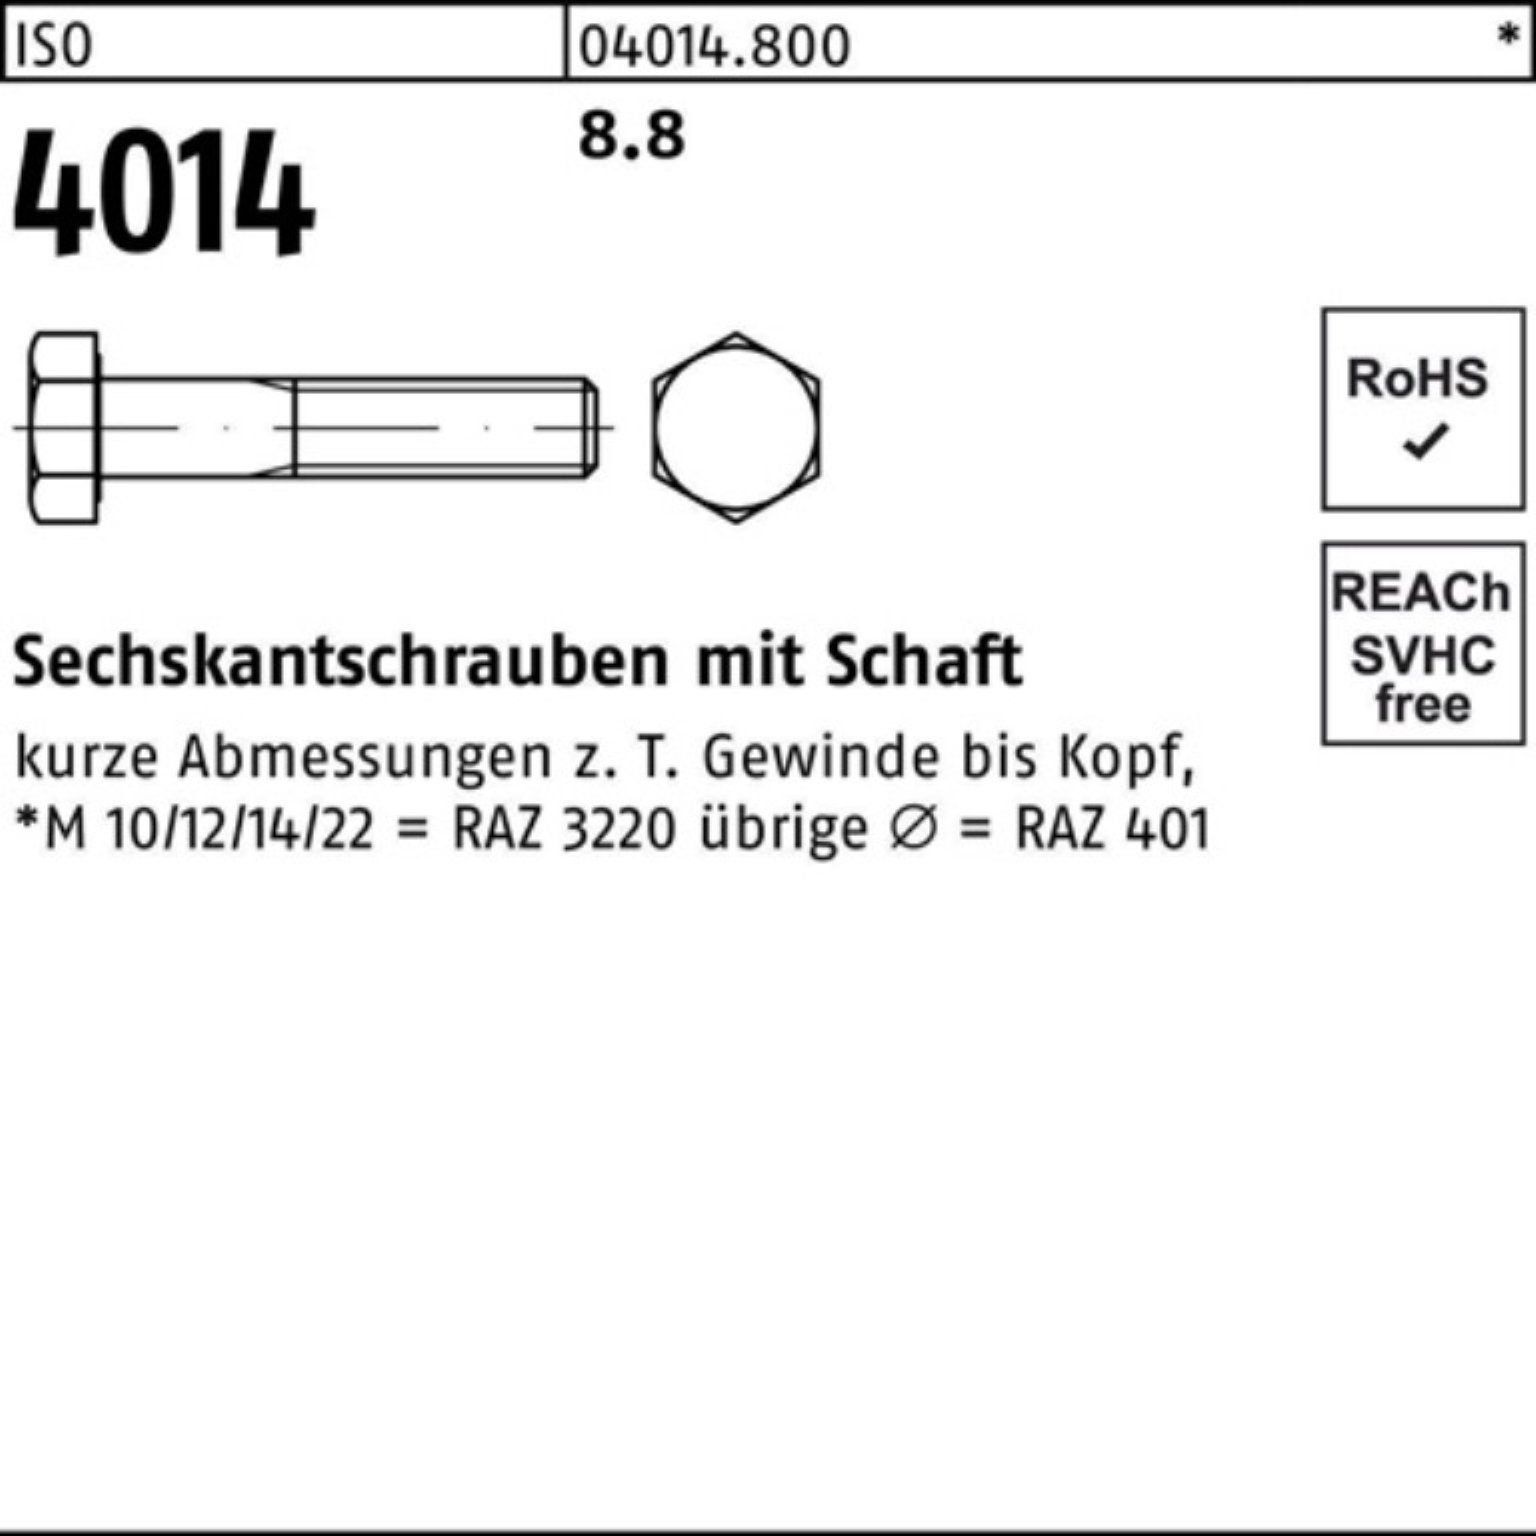 Sechskantschraube 4014 Pack 8.8 IS Schaft 190 Stück 100er Bufab M10x 50 Sechskantschraube ISO